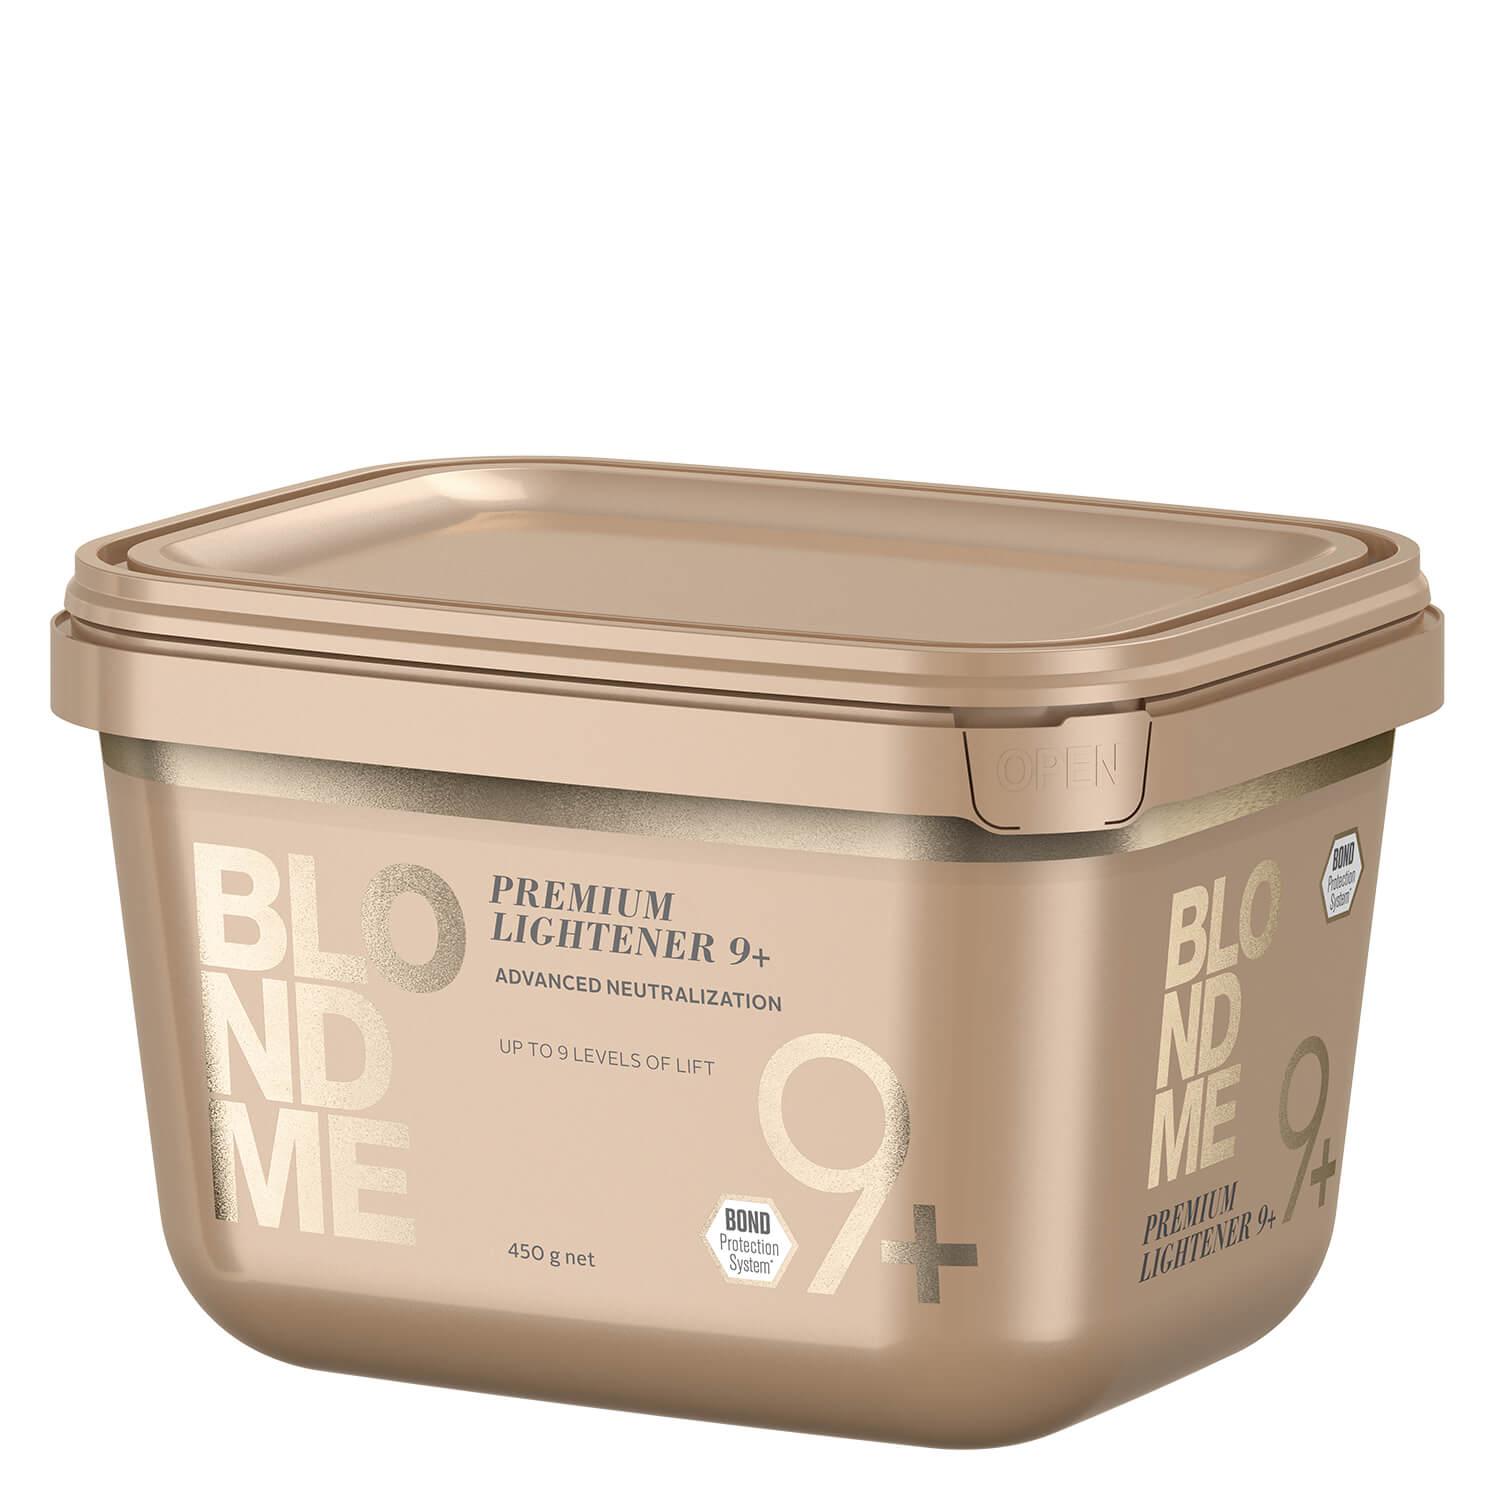 Blondme - Premium Lightener 9+